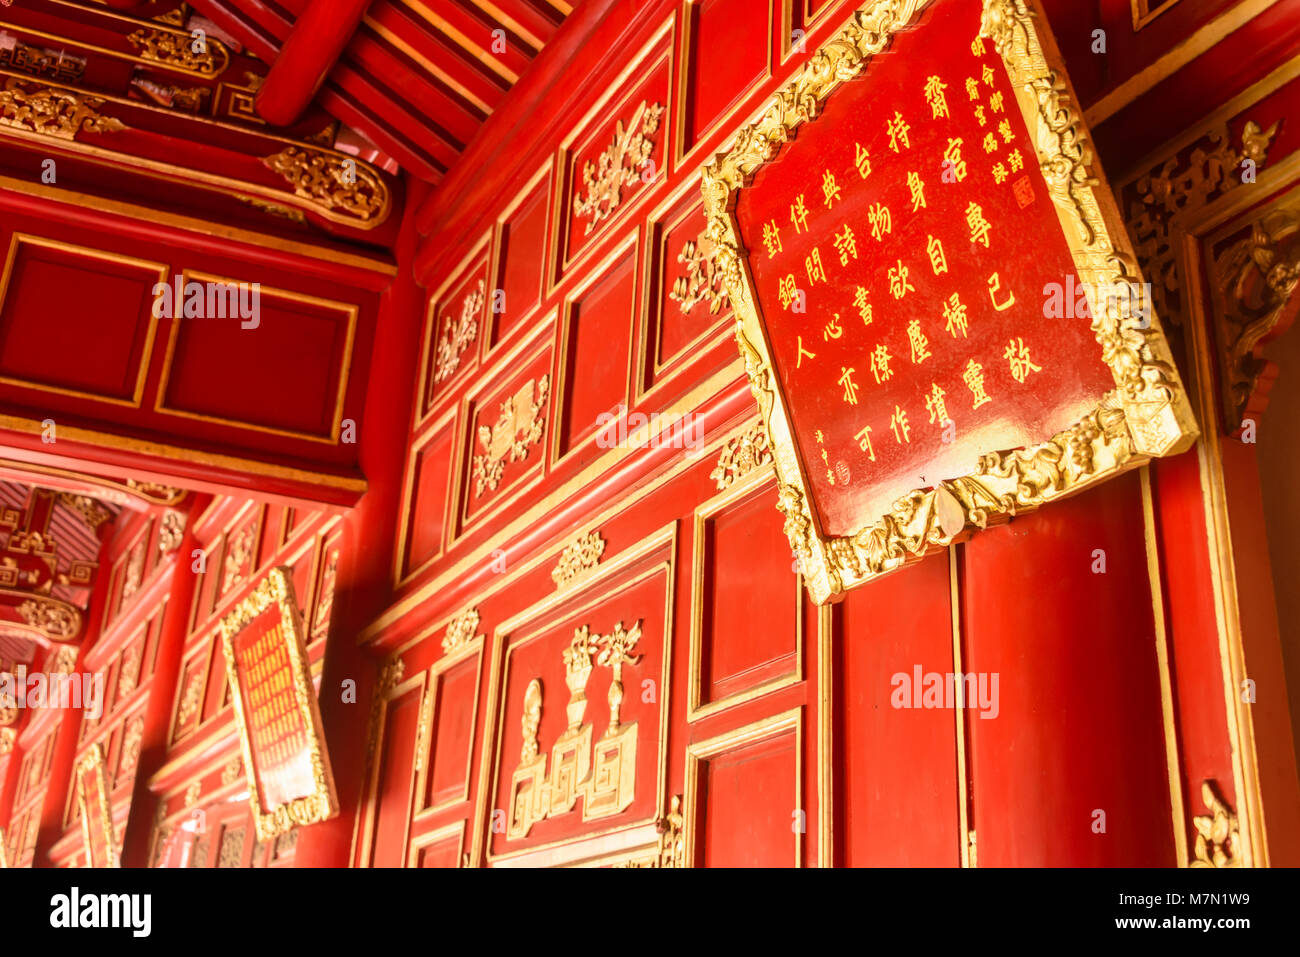 Reich verzierten Holzpaneelen, lackiert in Rot und Gold in Cần Điện Chánh (Can Chanh Palast) Hoàng thành (Imperial City) ein von Mauern umgebene Zitadelle 1804 in Hue, Vietnam gebaut. Stockfoto